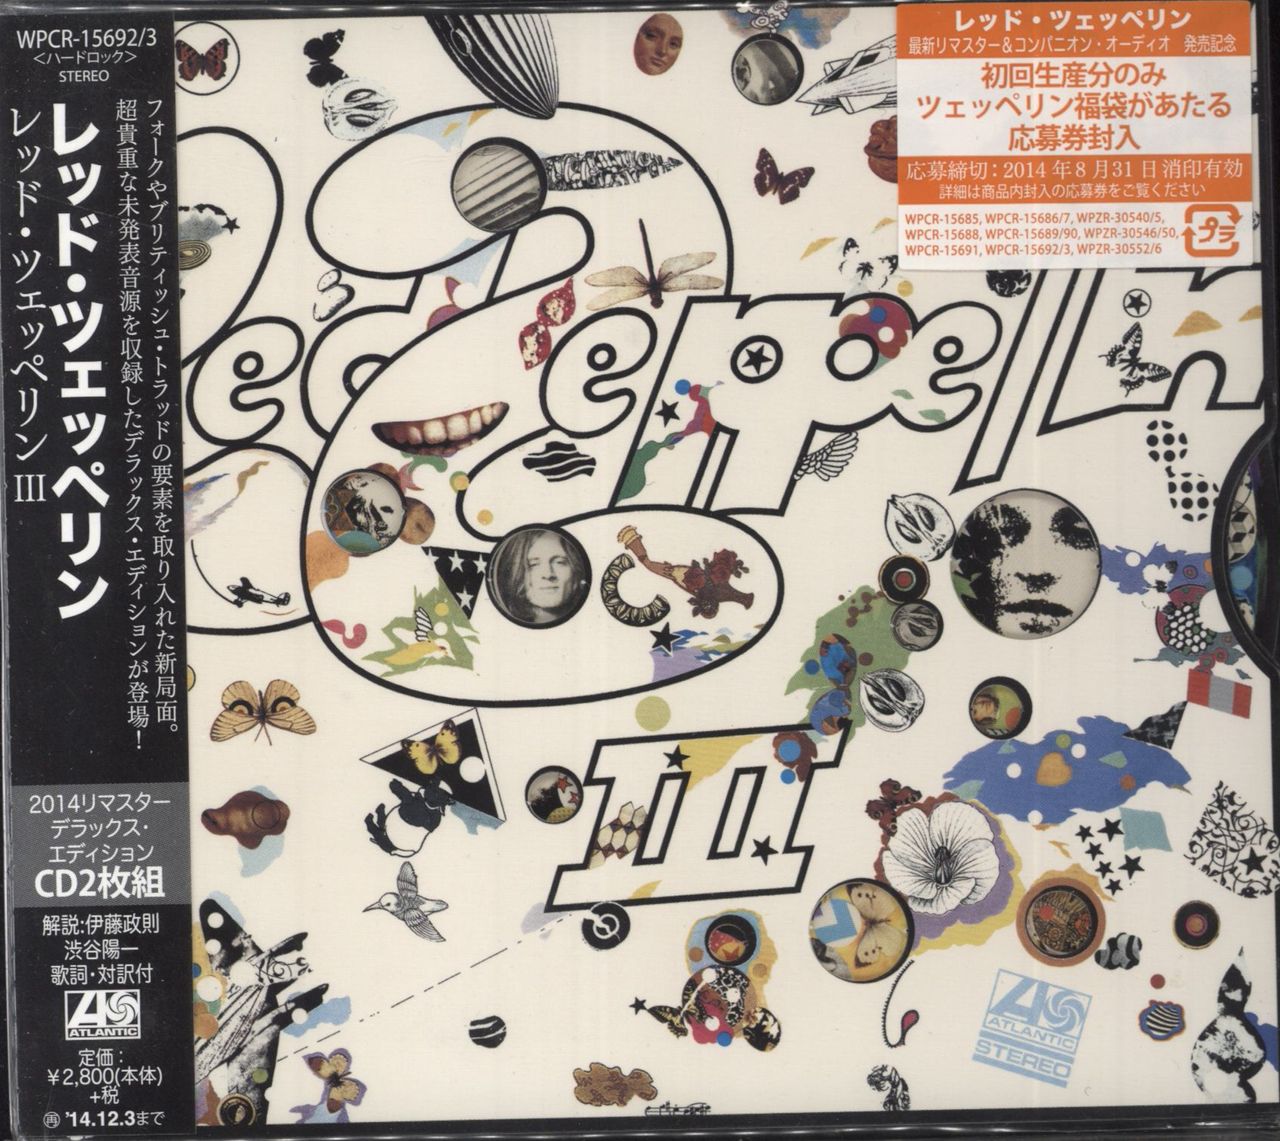 æg eksistens Kosciuszko Led Zeppelin Led Zeppelin III Japanese 2-CD album set — RareVinyl.com